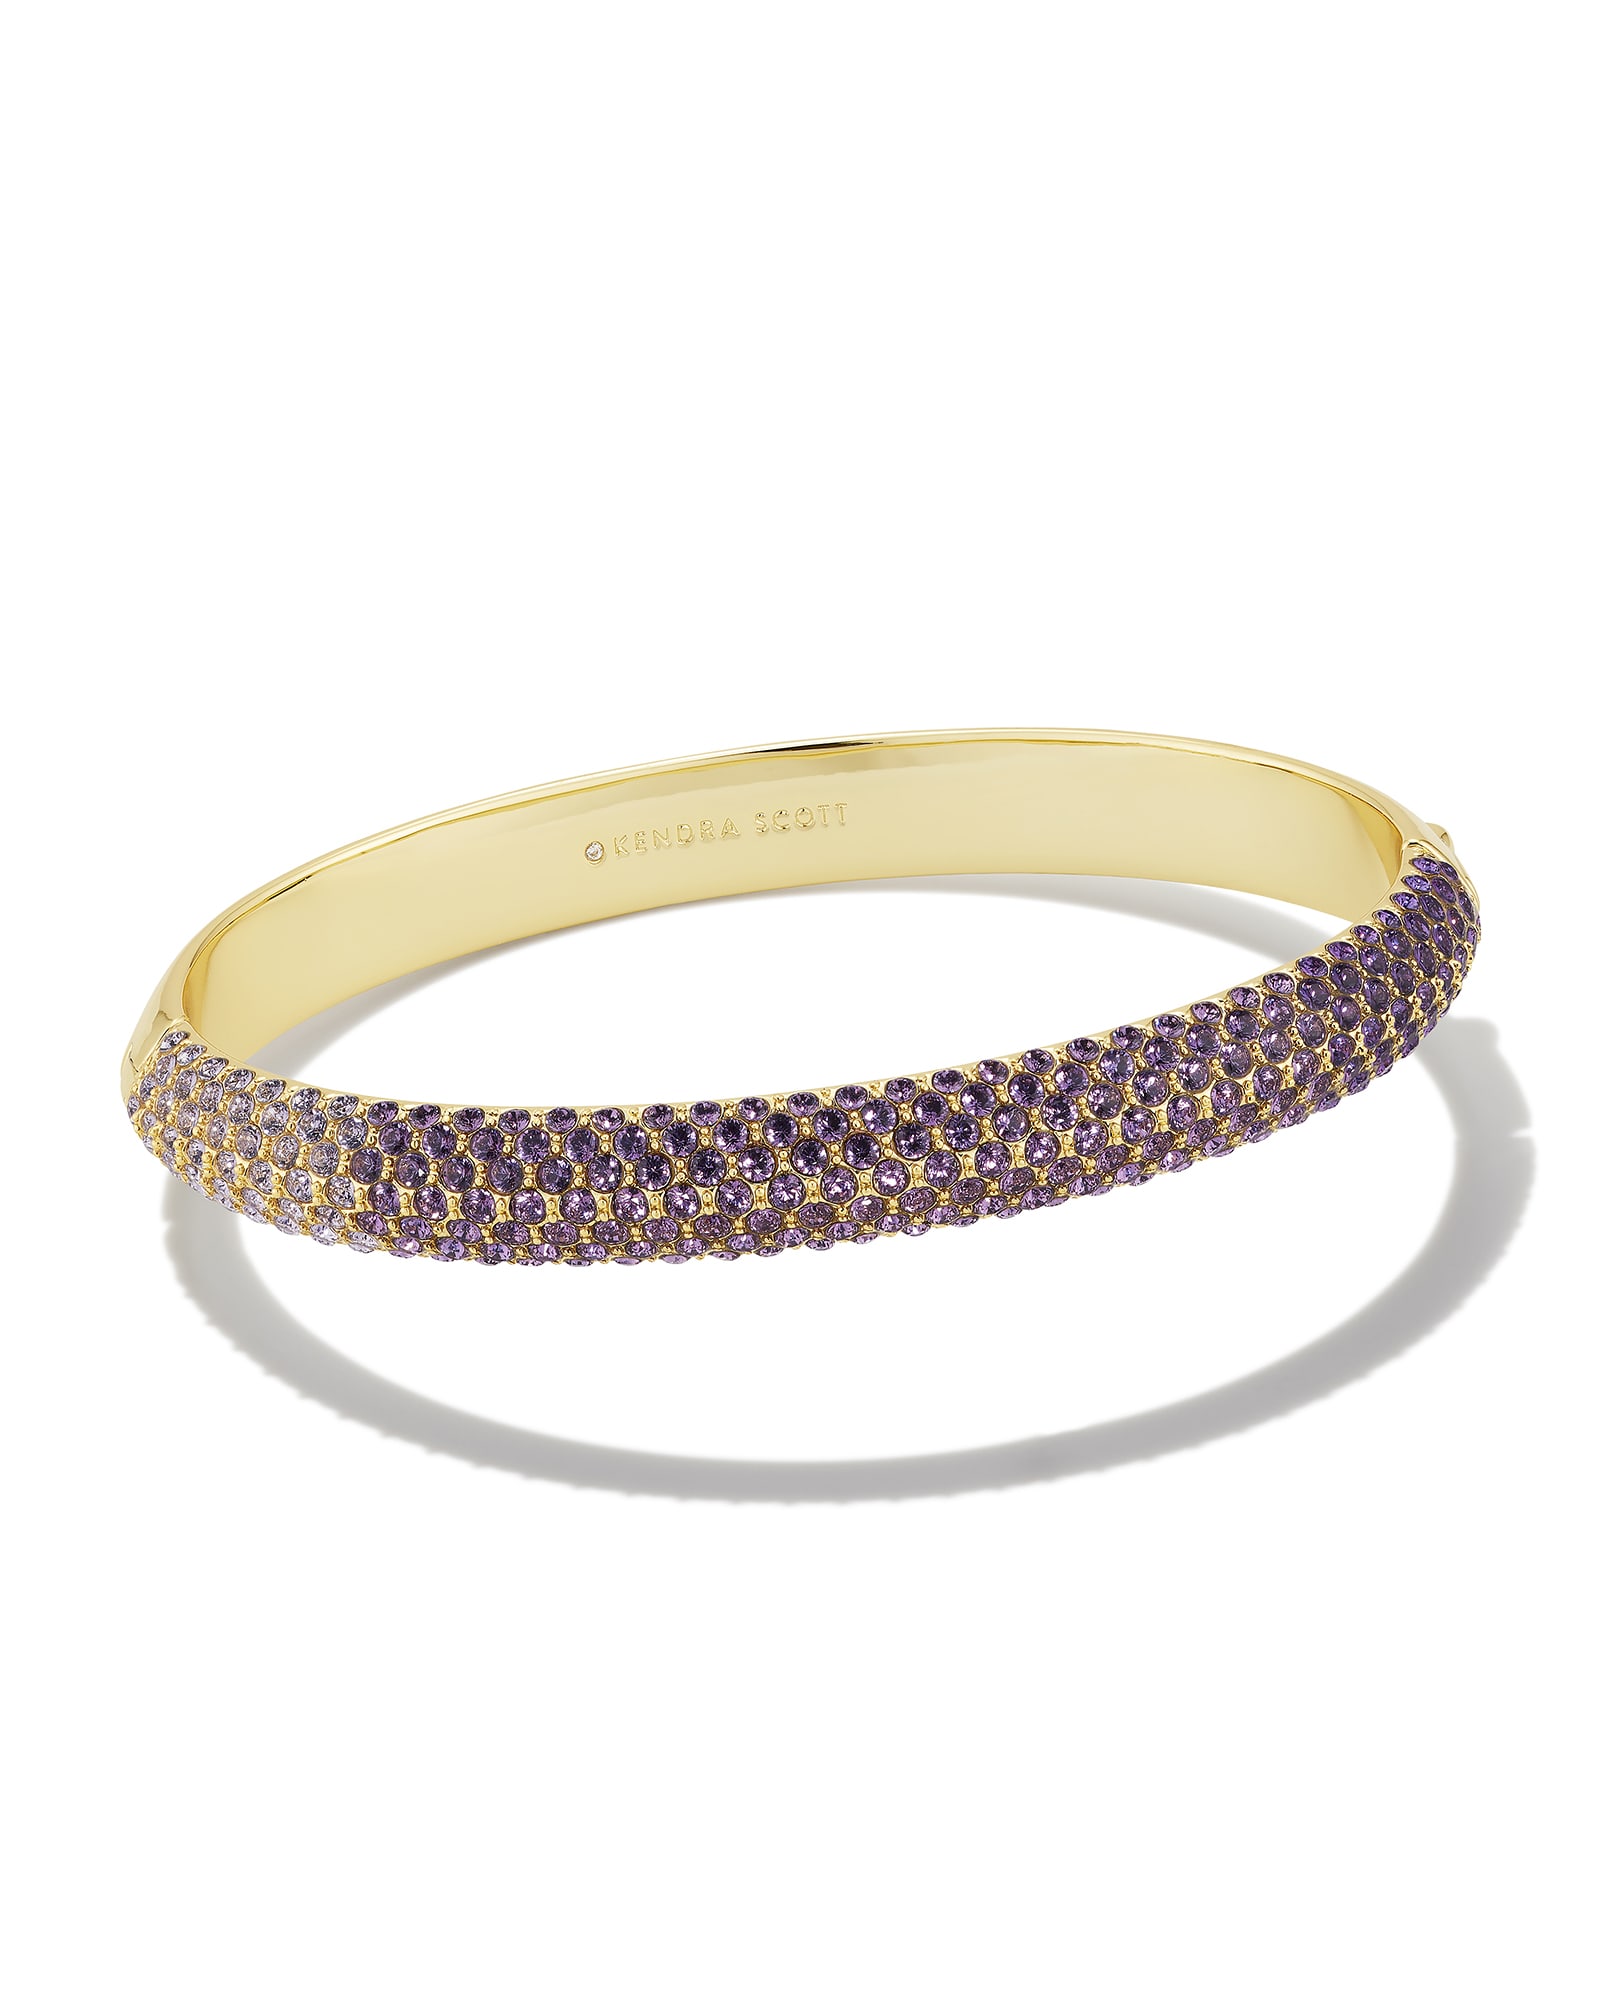 Photos - Bracelet KENDRA SCOTT Mikki Gold Pave Bangle  in Purple Mauve Ombre Mix | C 